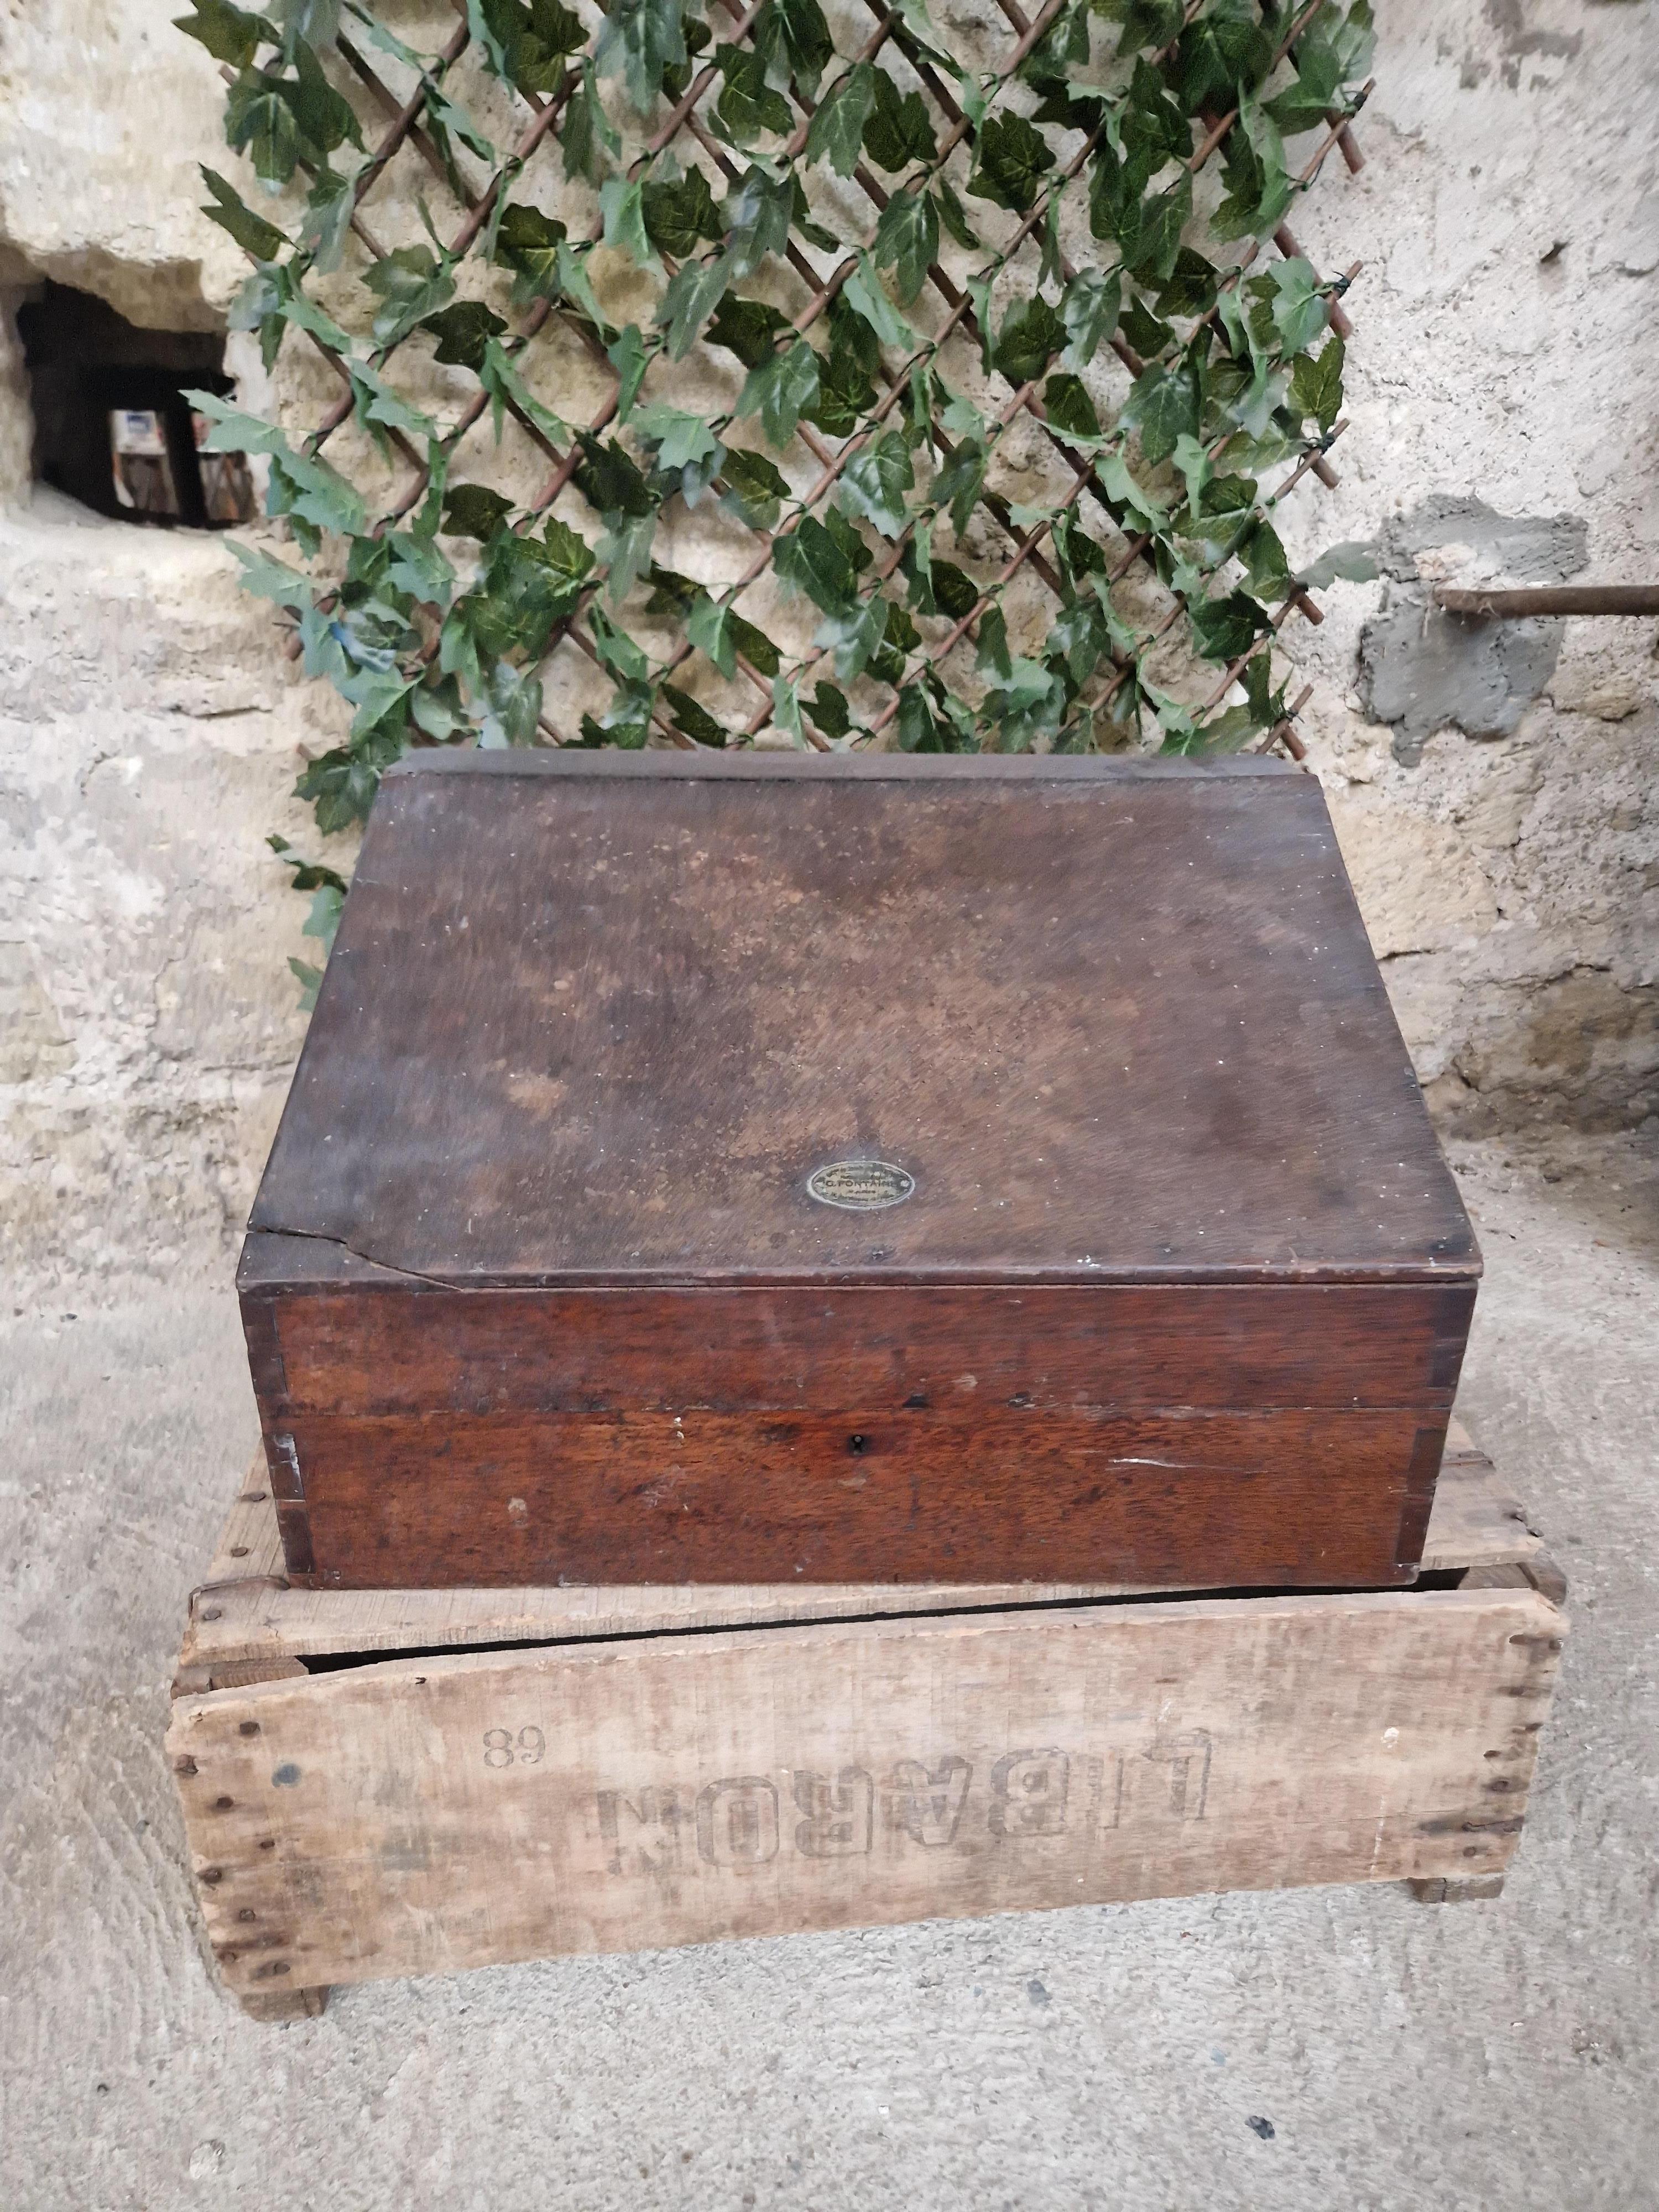 Cette ancienne boîte d'apothicaire française est une pièce rare pour les collectionneurs de souvenirs scientifiques. Fabriquée au XIXe siècle, cette boîte présente un design unique qui conviendra parfaitement à tout amateur d'apothicaire ou de